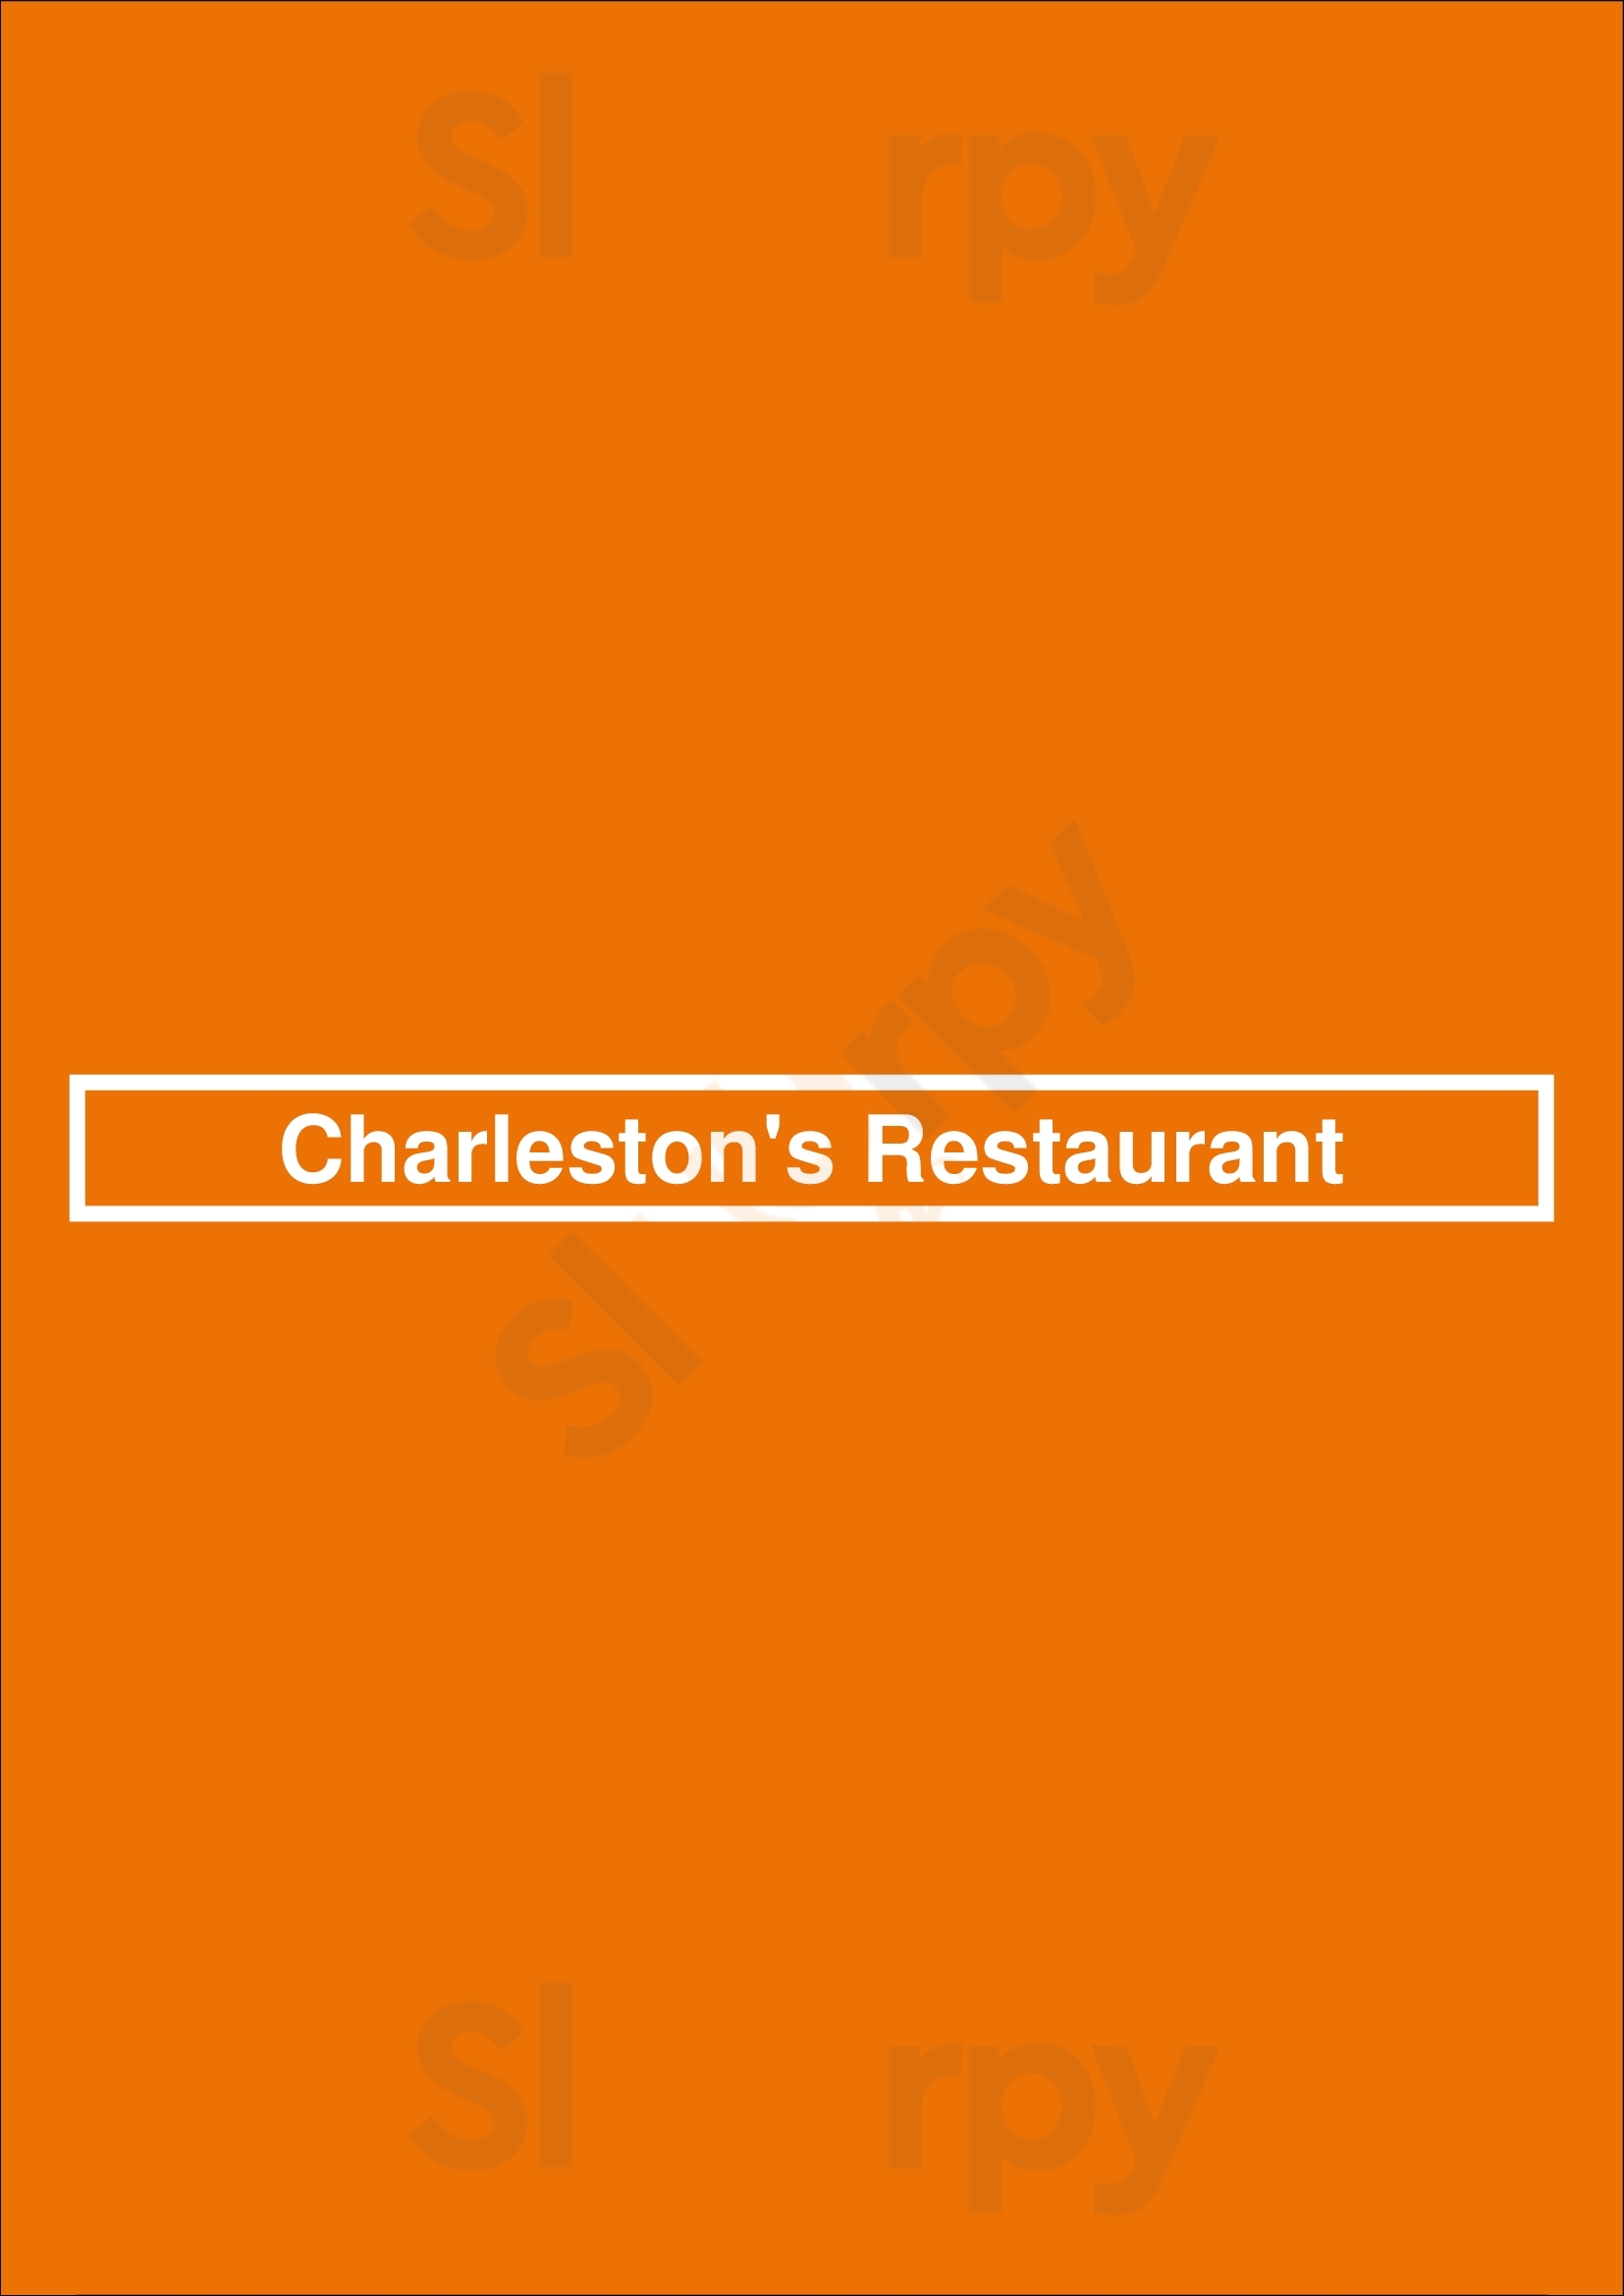 Charleston's Restaurant Broken Arrow Menu - 1